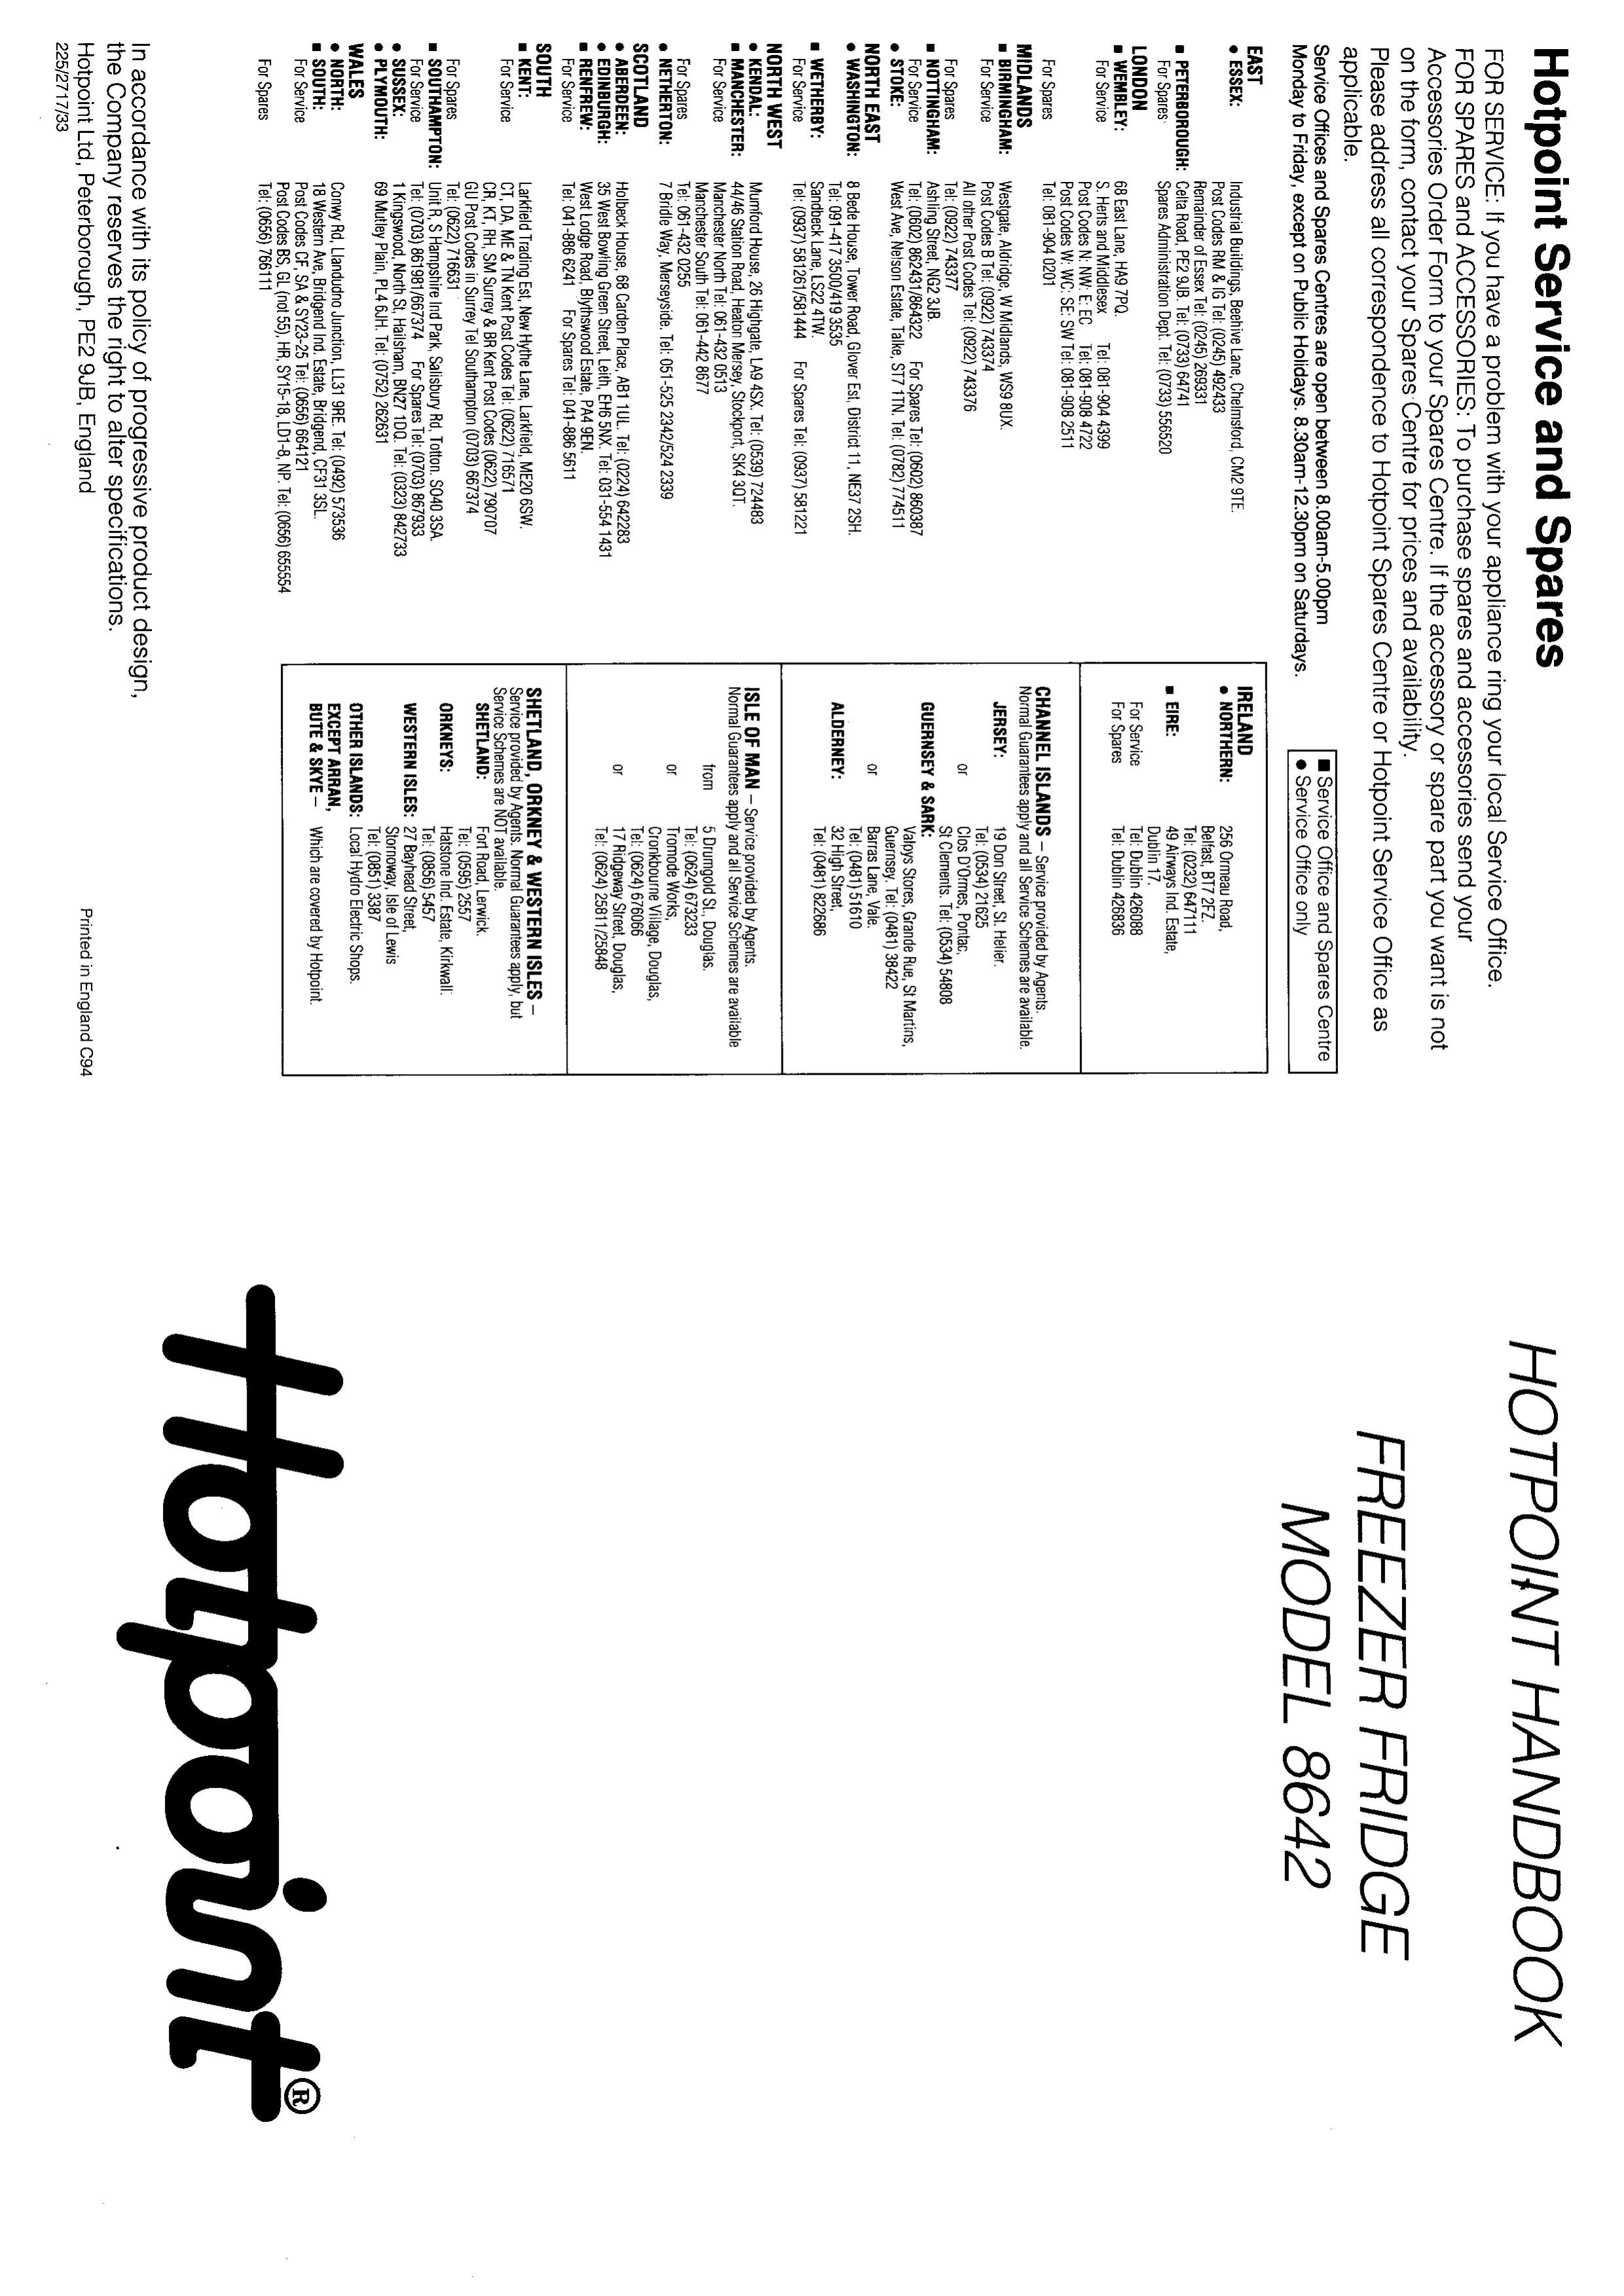 Hotpoint 8642 Refrigerator User Manual